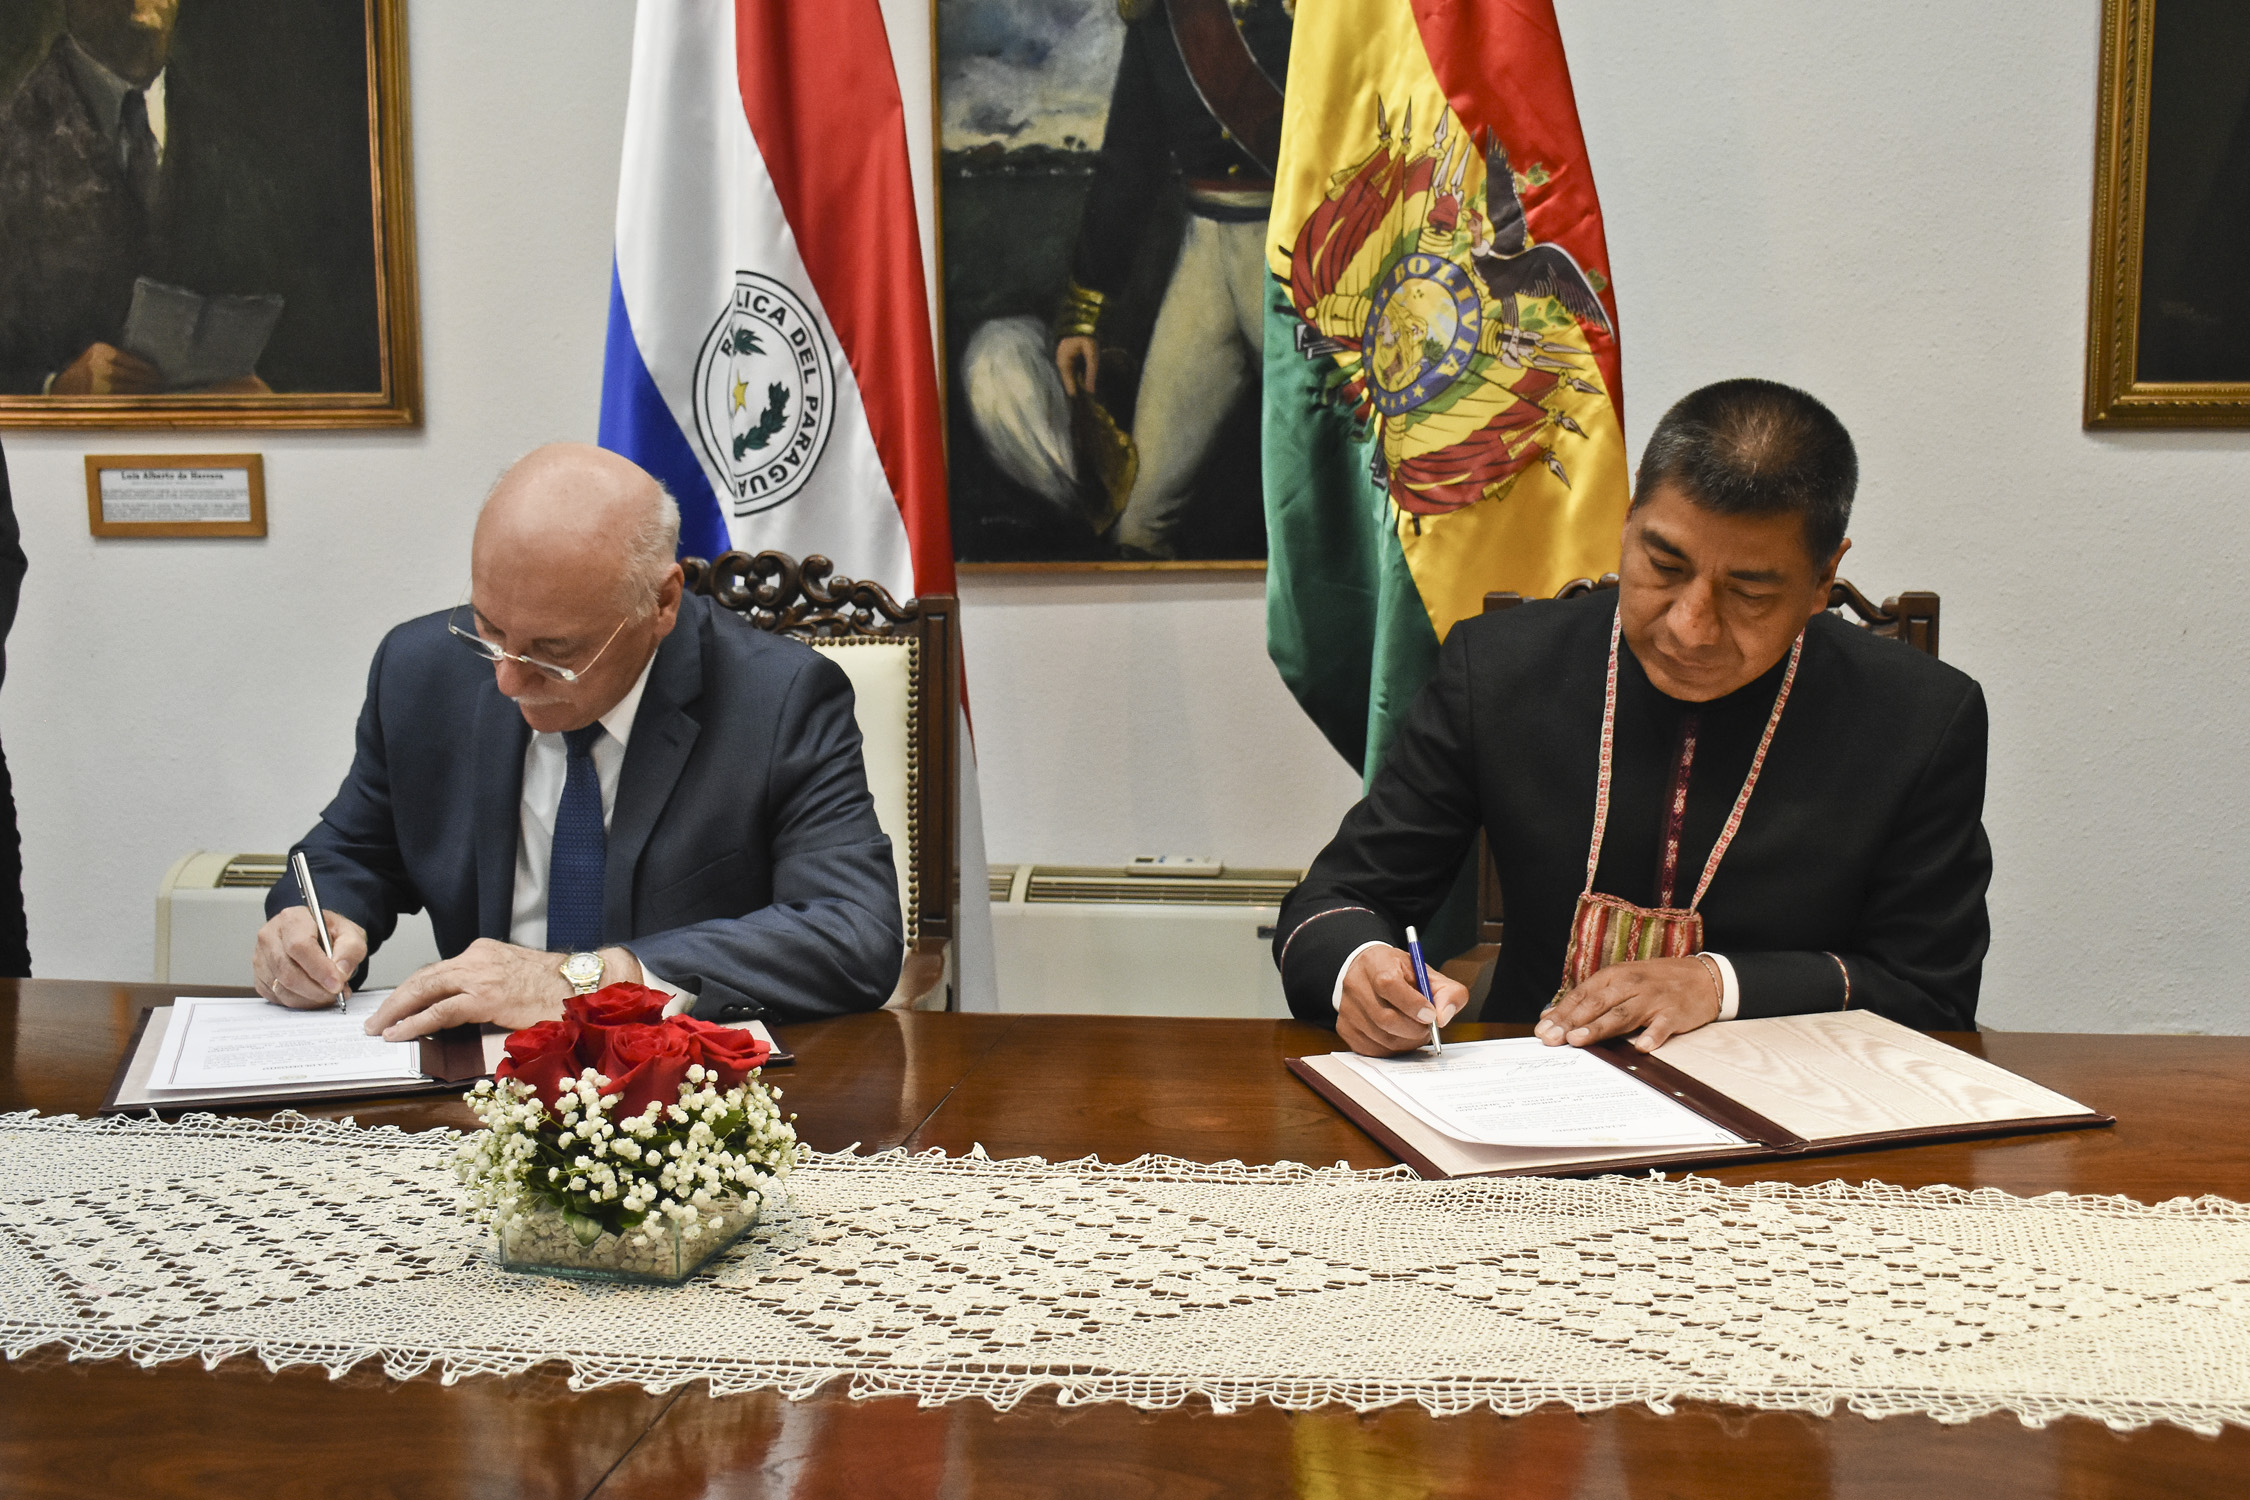 Se realizó acto de Depósito de Instrumento de Ratificación por parte del Paraguay al Protocolo de Adhesión de Bolivia al Mercosur